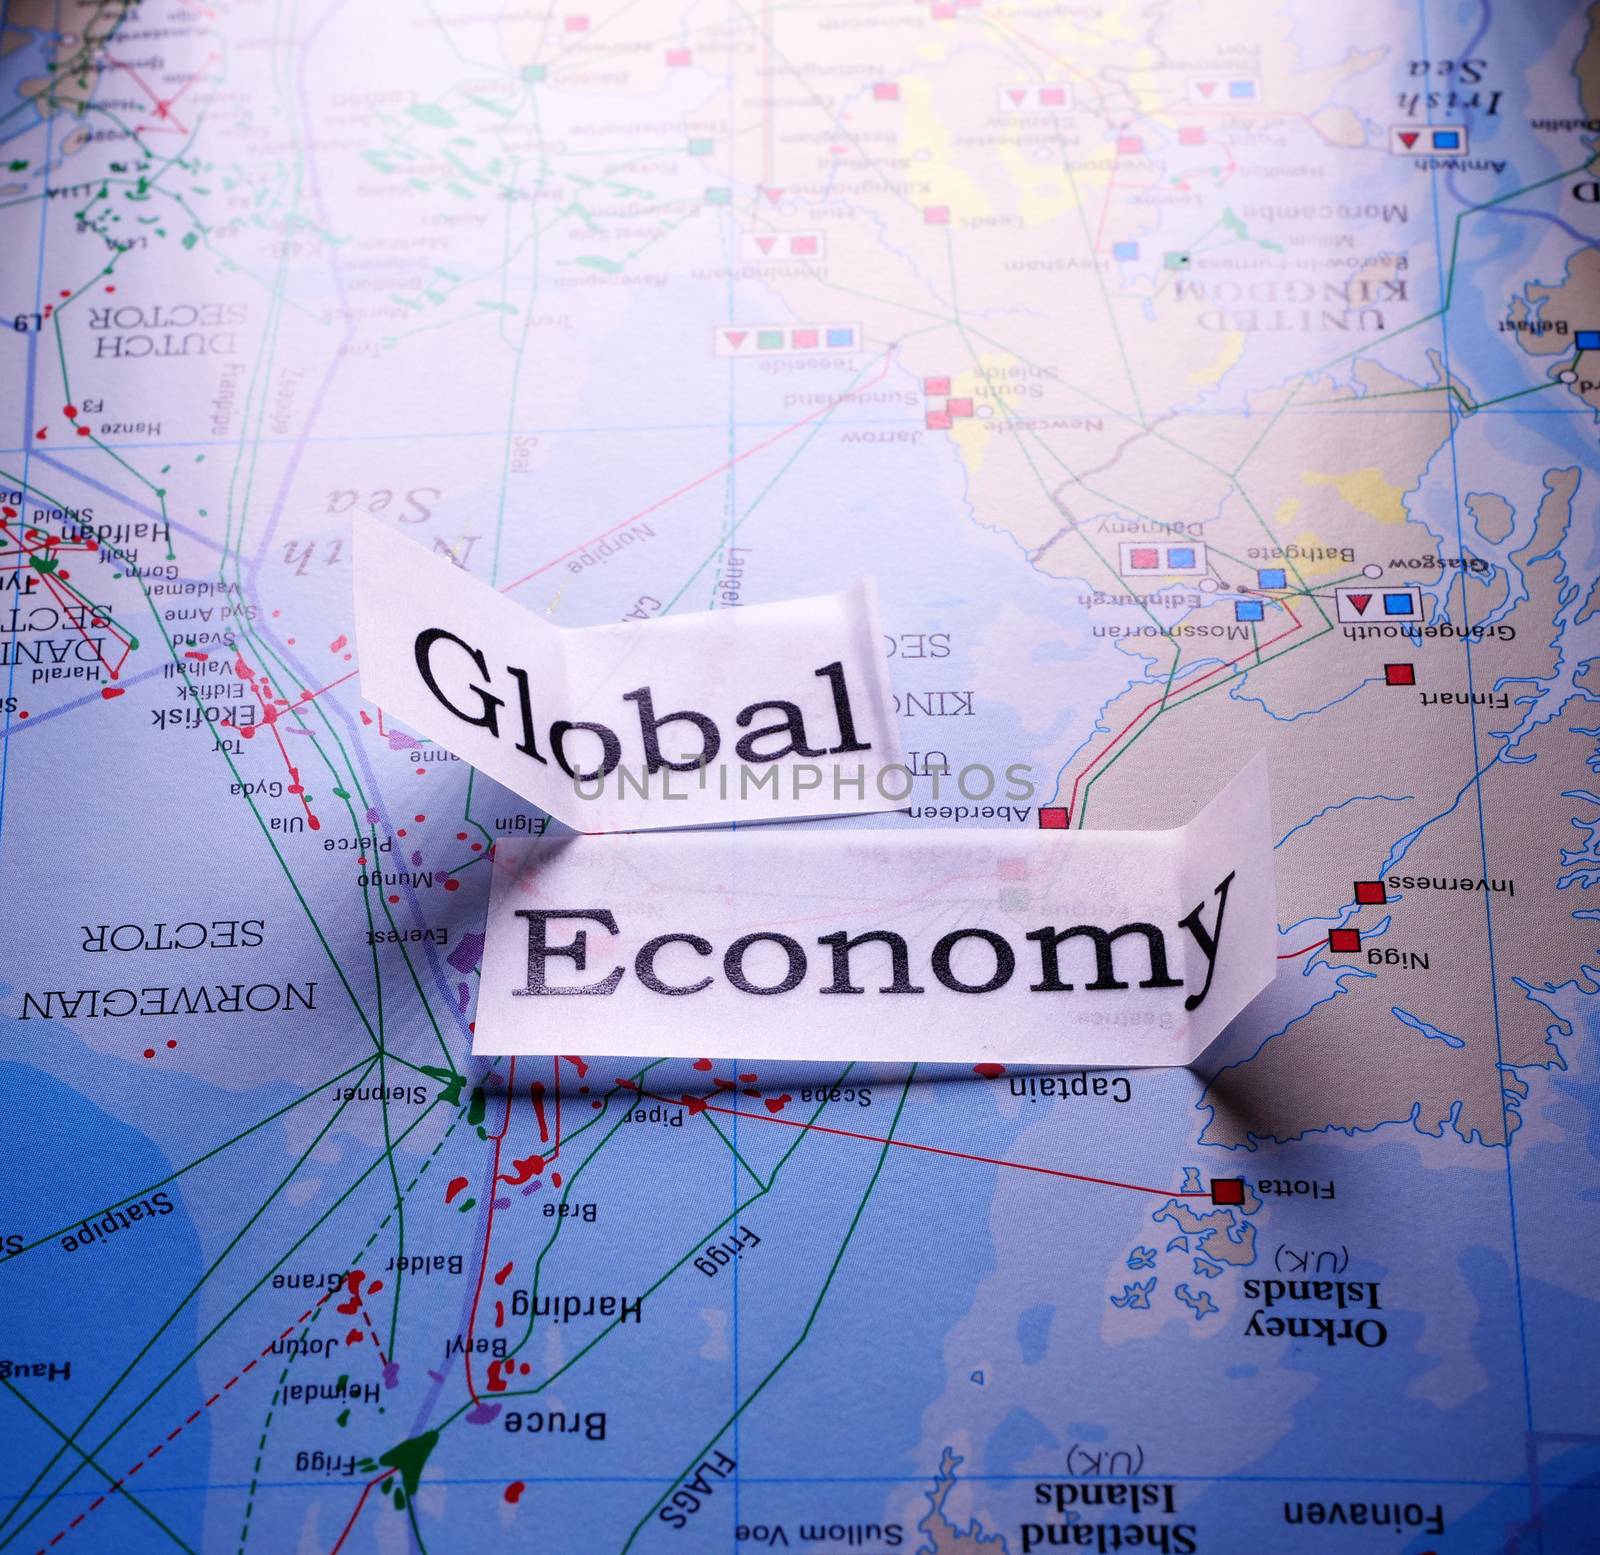 Global Economy Tag by janaka